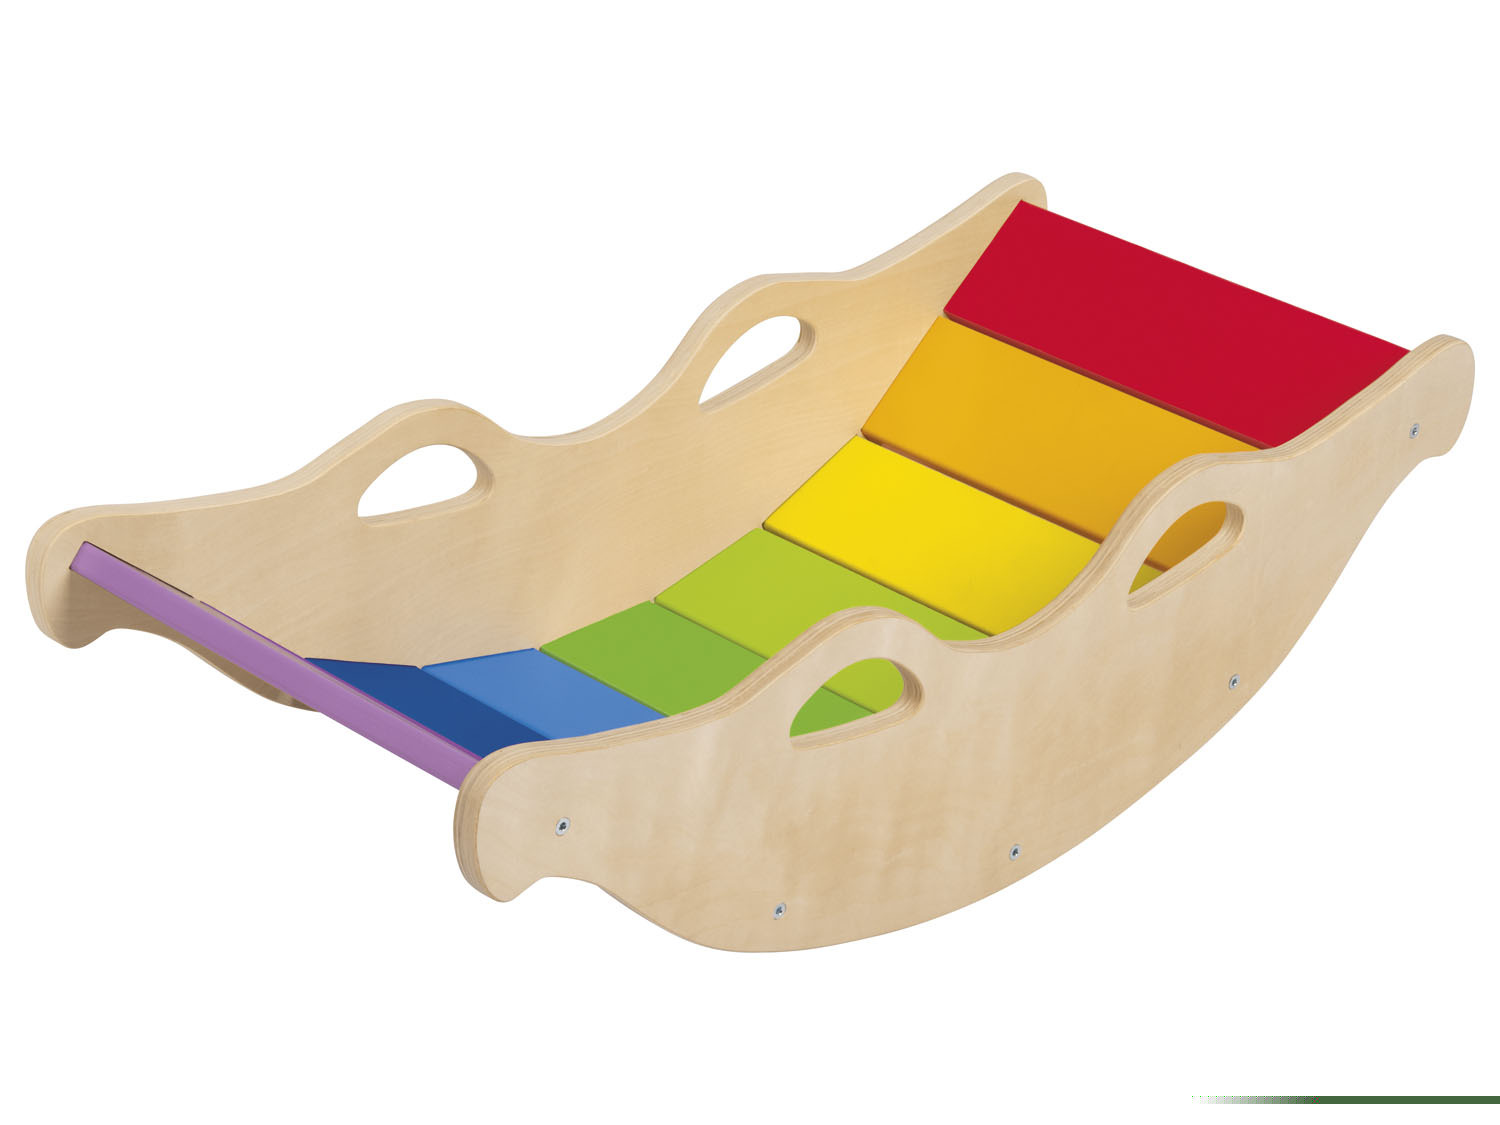 Playtive Holz Balancewippe, Regenbogenfarben in LIDL |